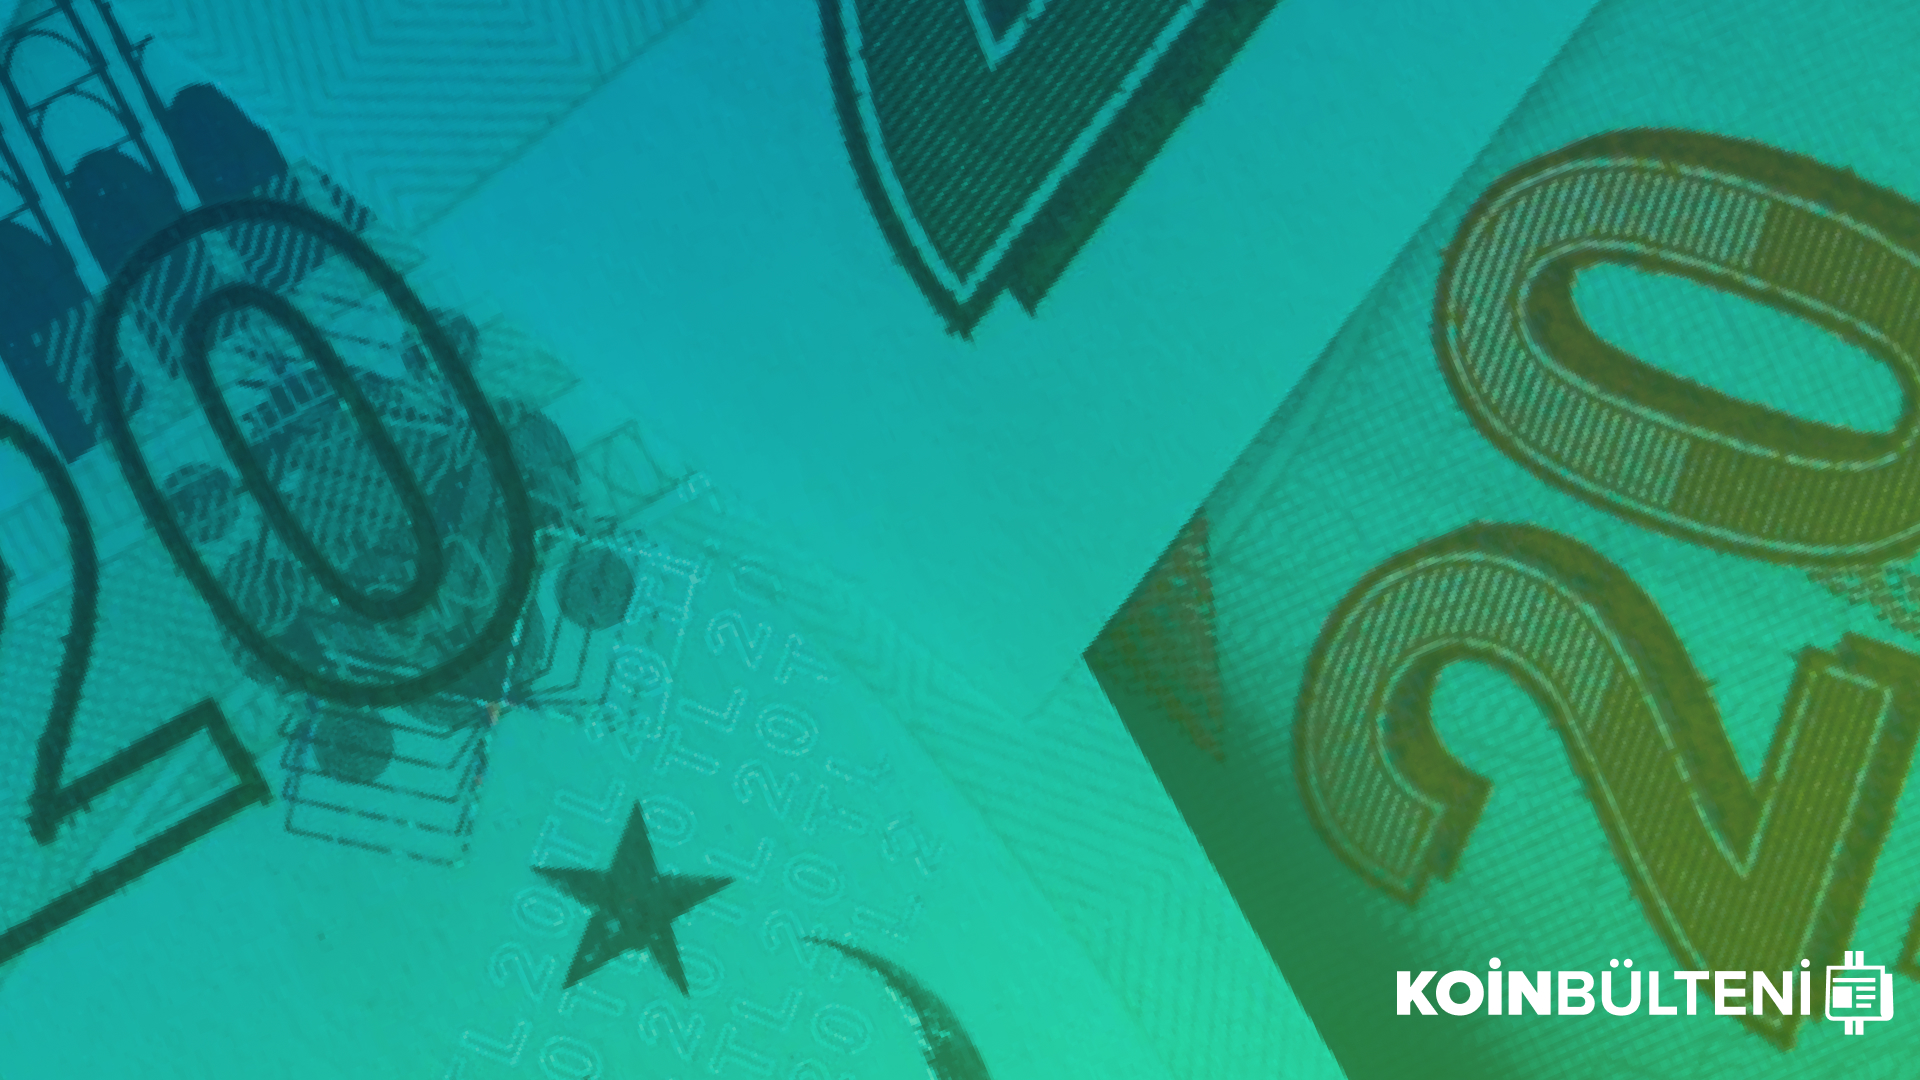 bitcoin-kripto-para-turkiye-usdt-dolar-ekonomi-yatirim